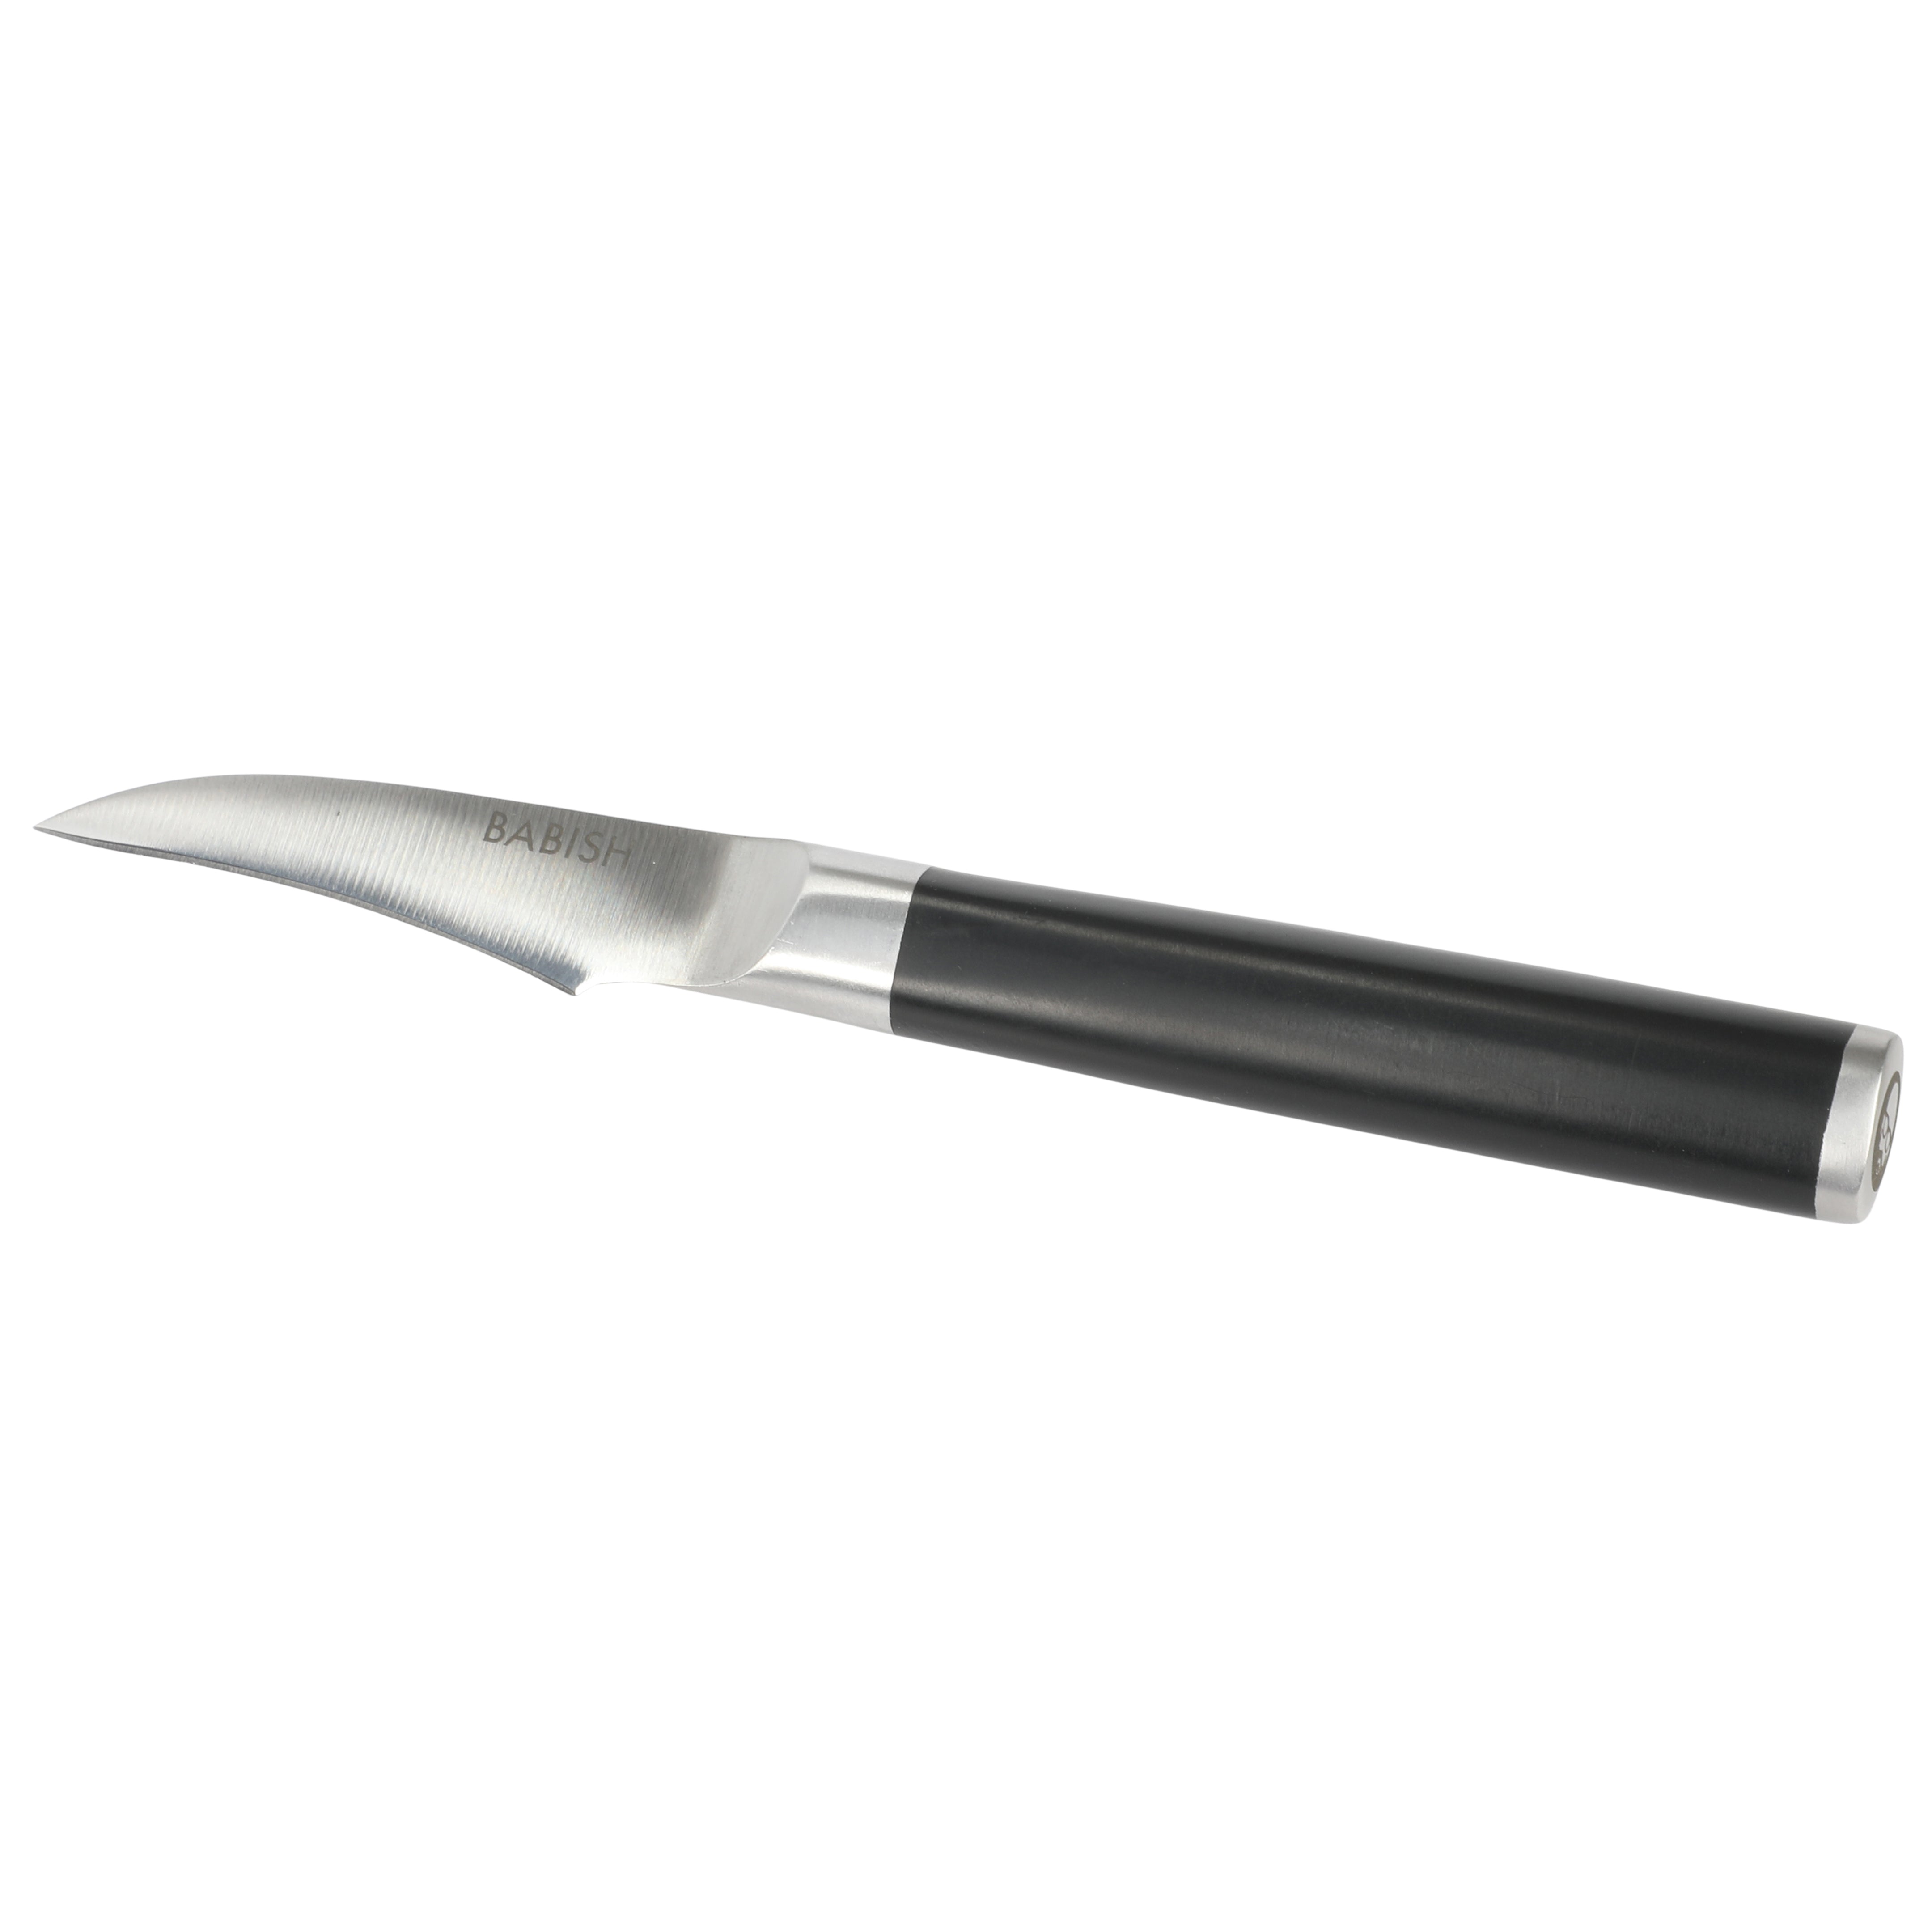 Babish 6.5 German Steel, Santoku Knife, Stainless Steel 